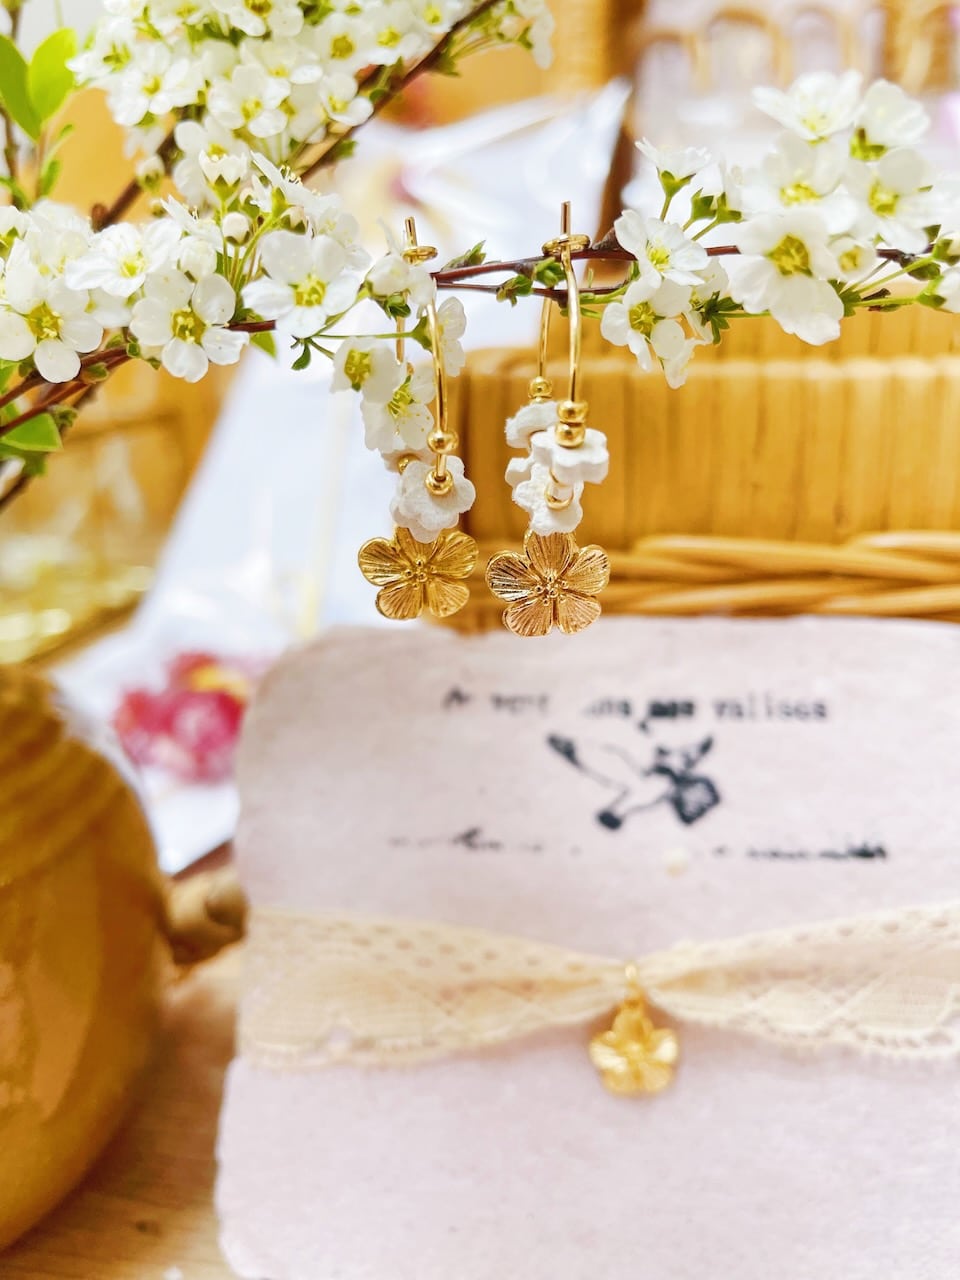 ravissant bracelet ruban réglable de véritable dentelle ancienne avec fleur dorée à l'or fin pour mariage cadeau cérémonie © du vent dans mes valises 1